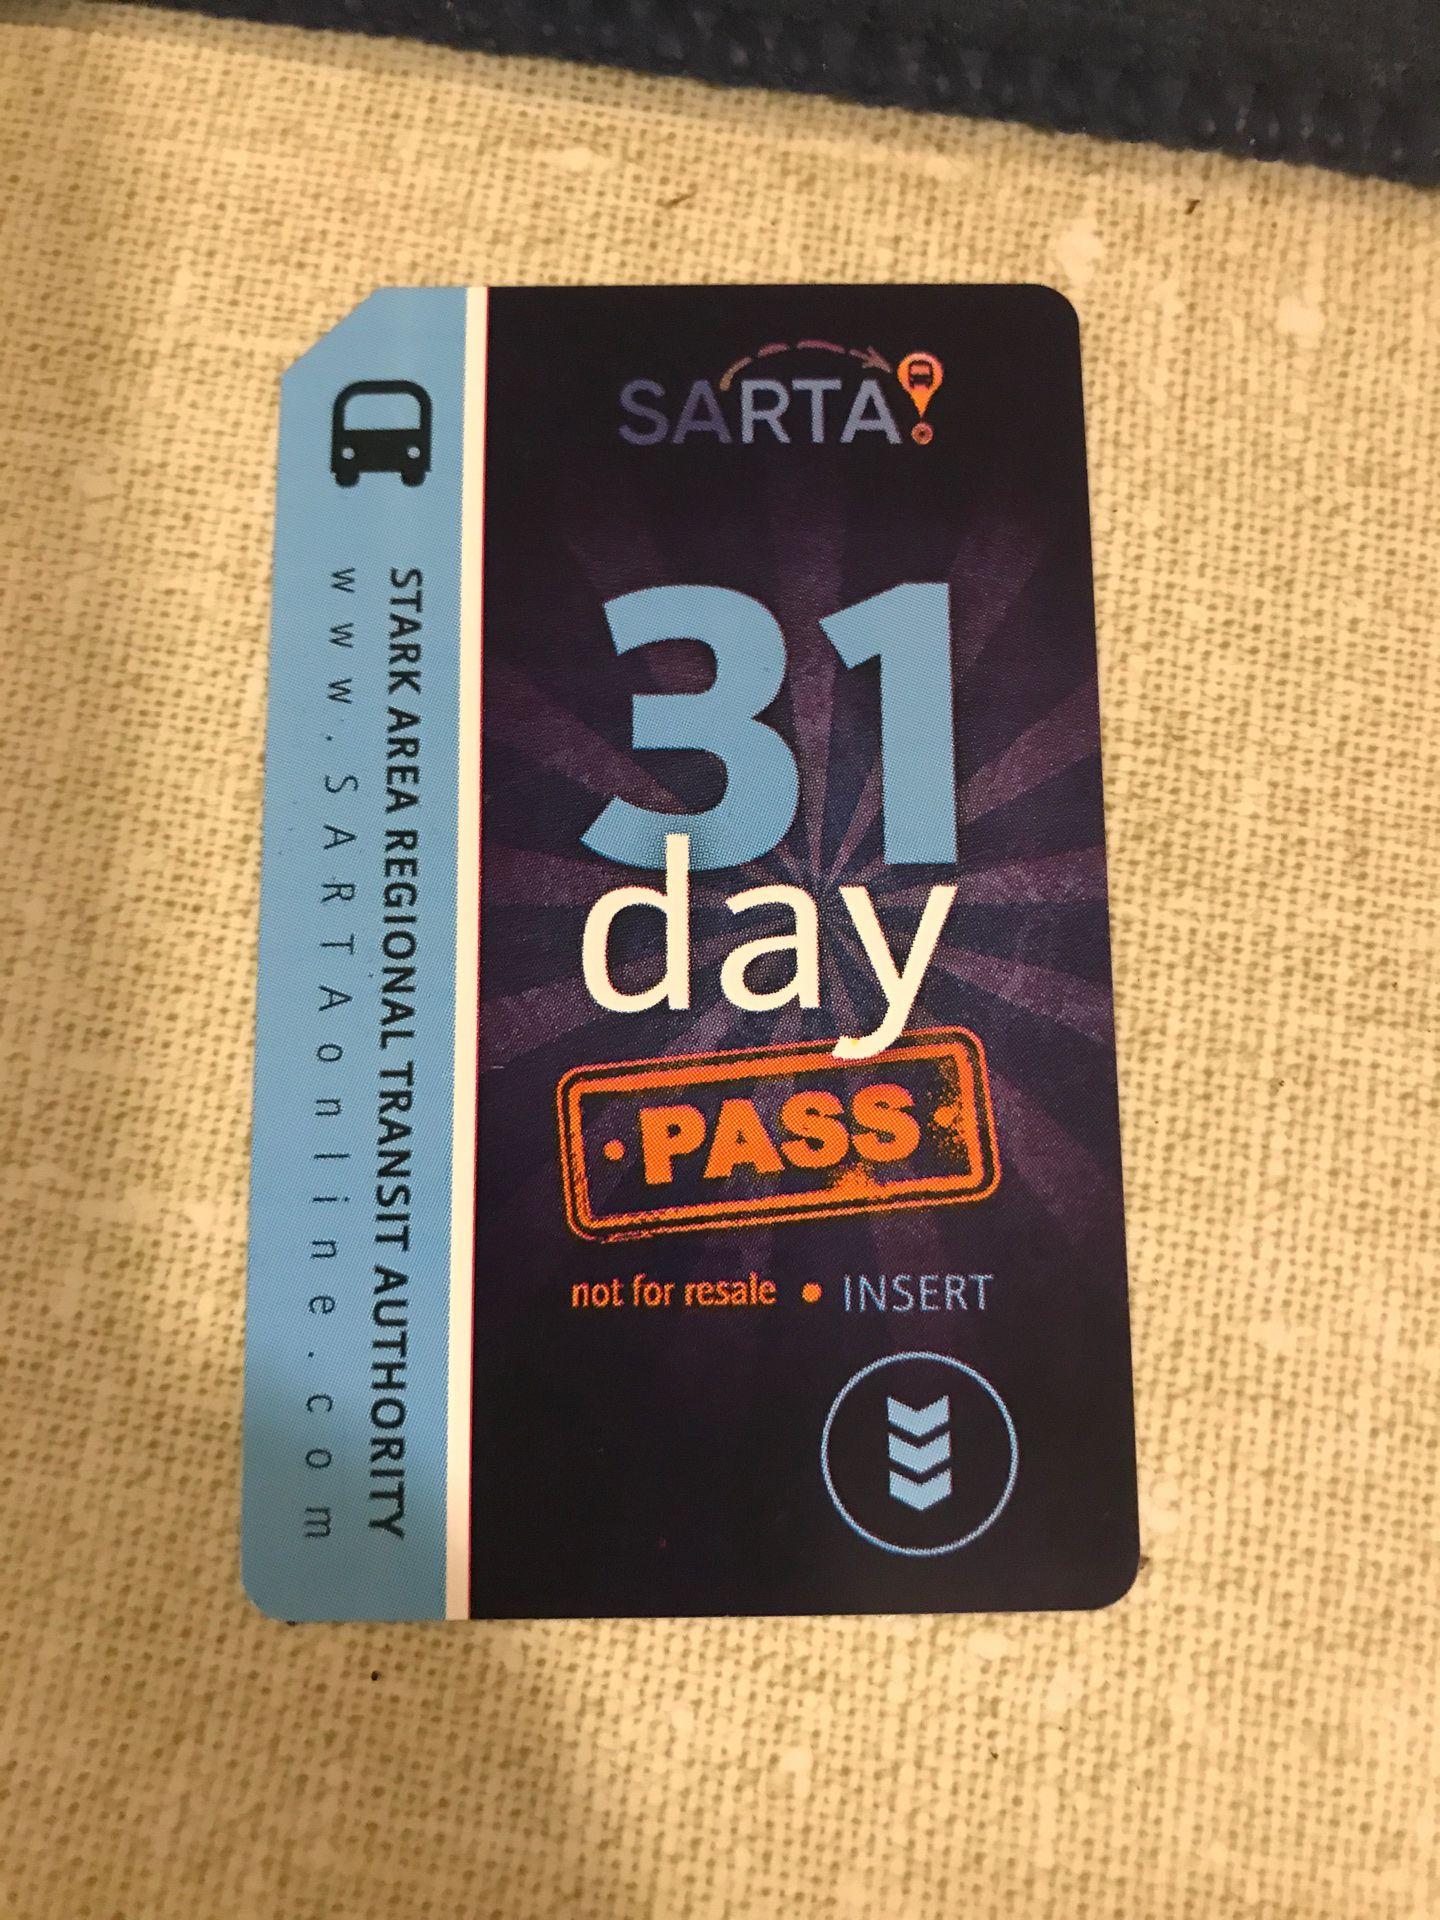 SARTA 31 day bus pass